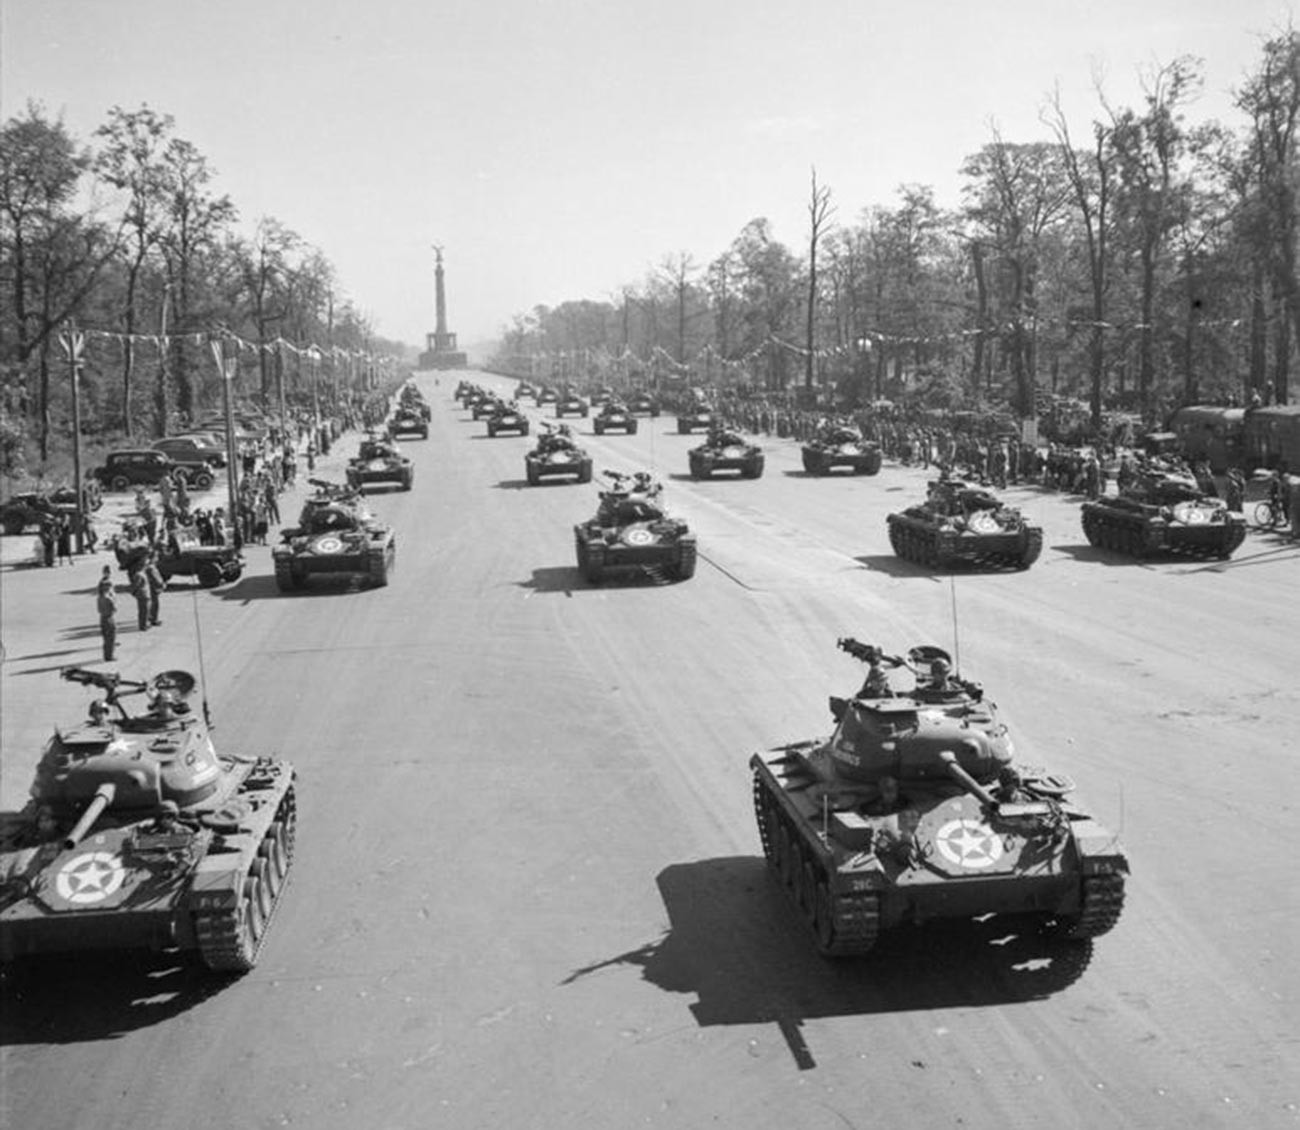 Tanques americanos M24 durante el desfile, el 7 de septiembre.

